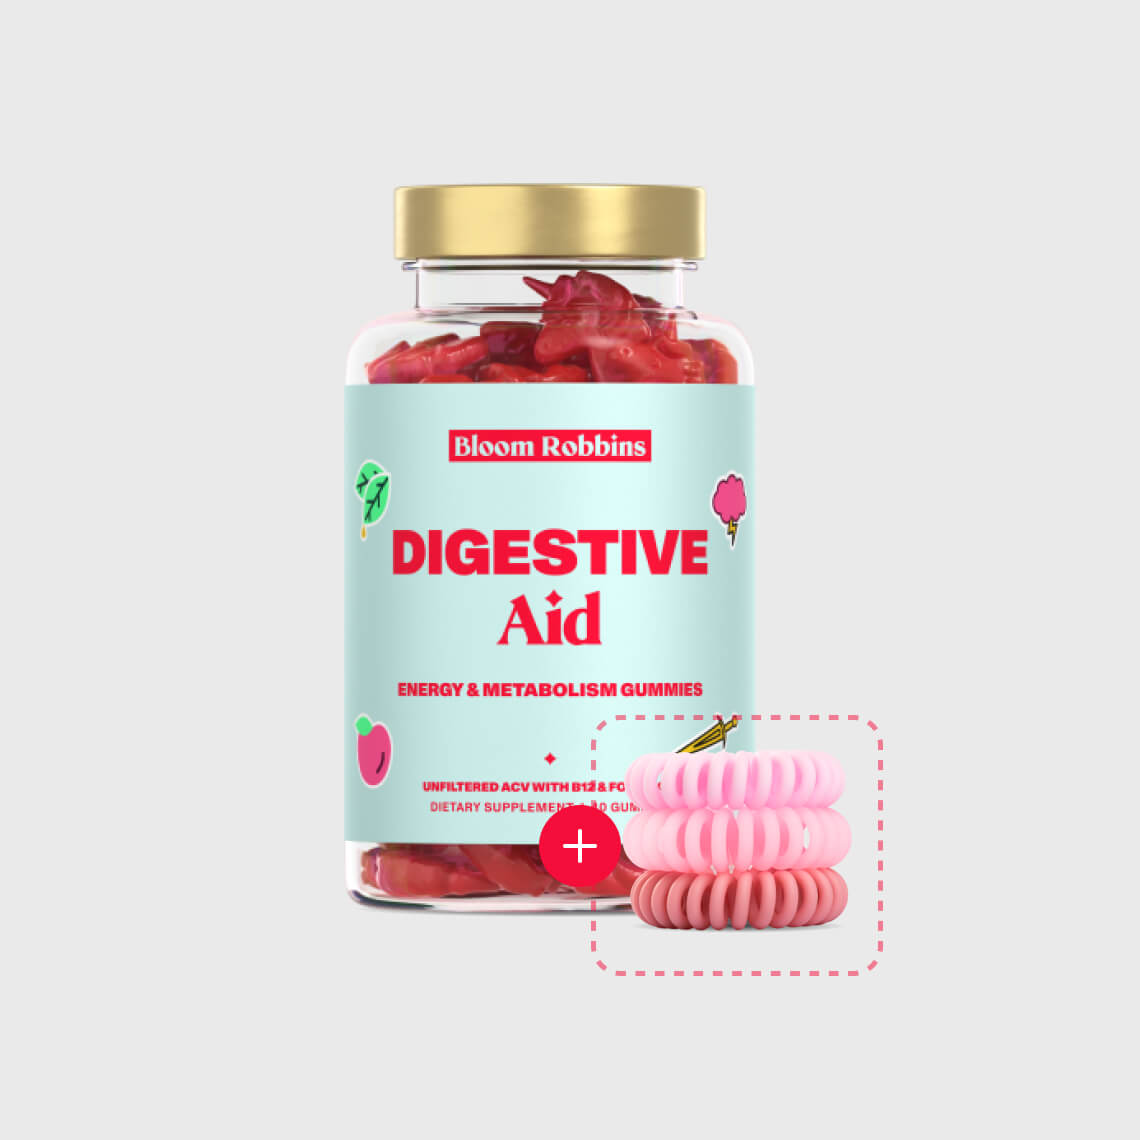 Digestive aid - Energy & Metabolism gummies